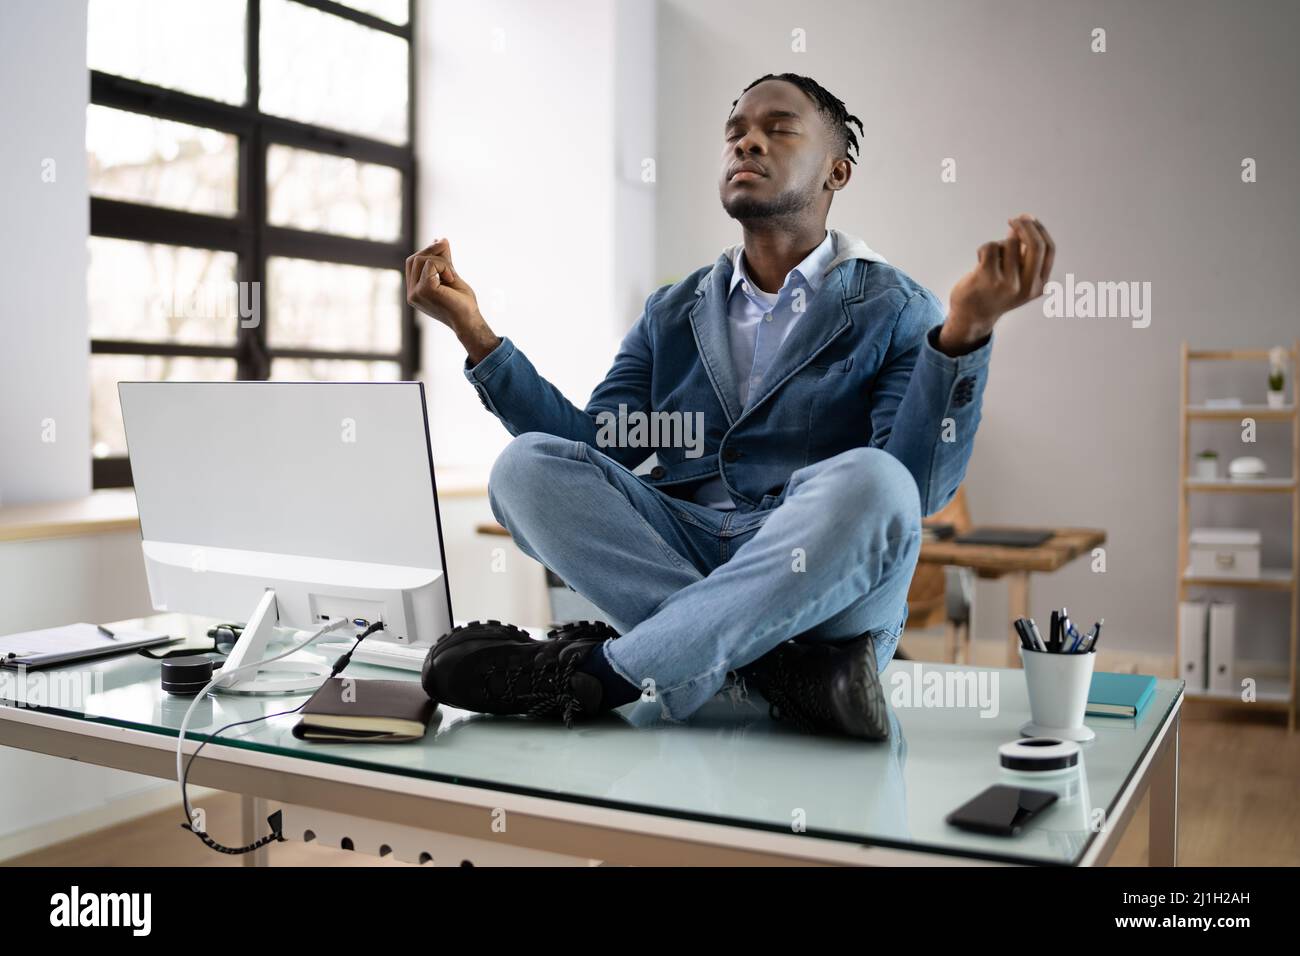 Un employé africain faisant de la santé mentale Yoga Méditation en bureau Banque D'Images